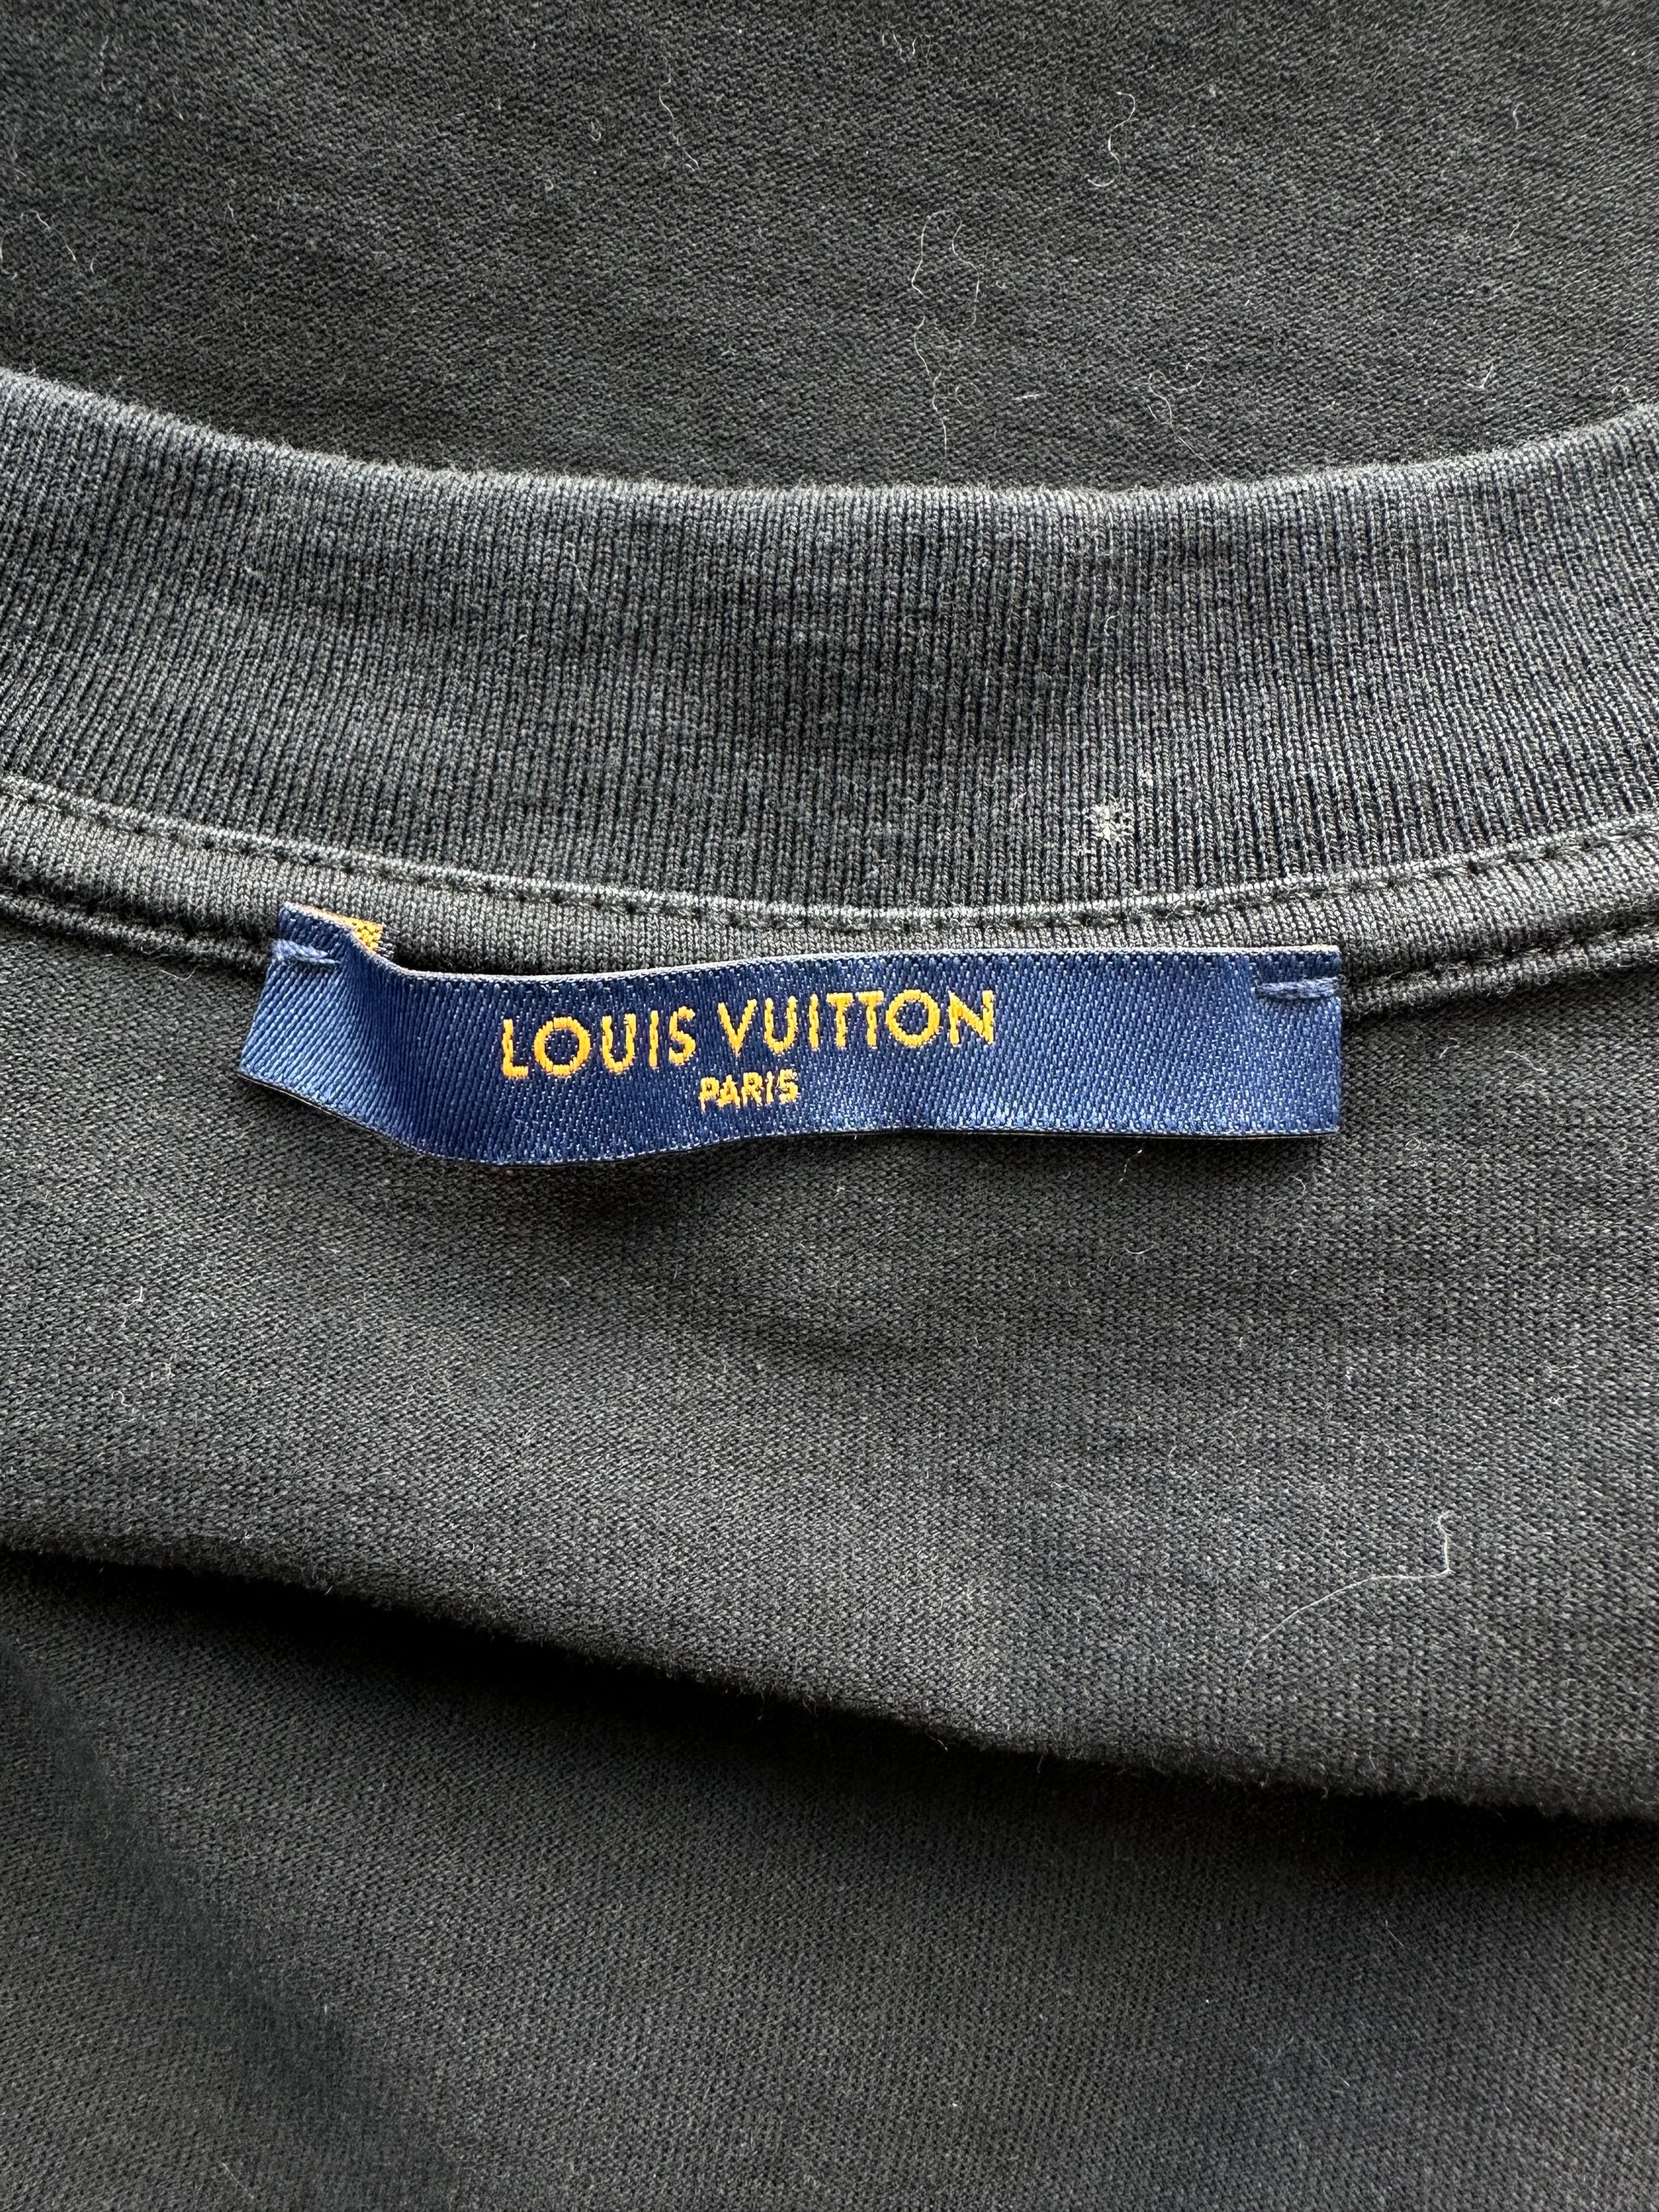 Louis Vuitton Monogram Gradient T-shirt Size Large